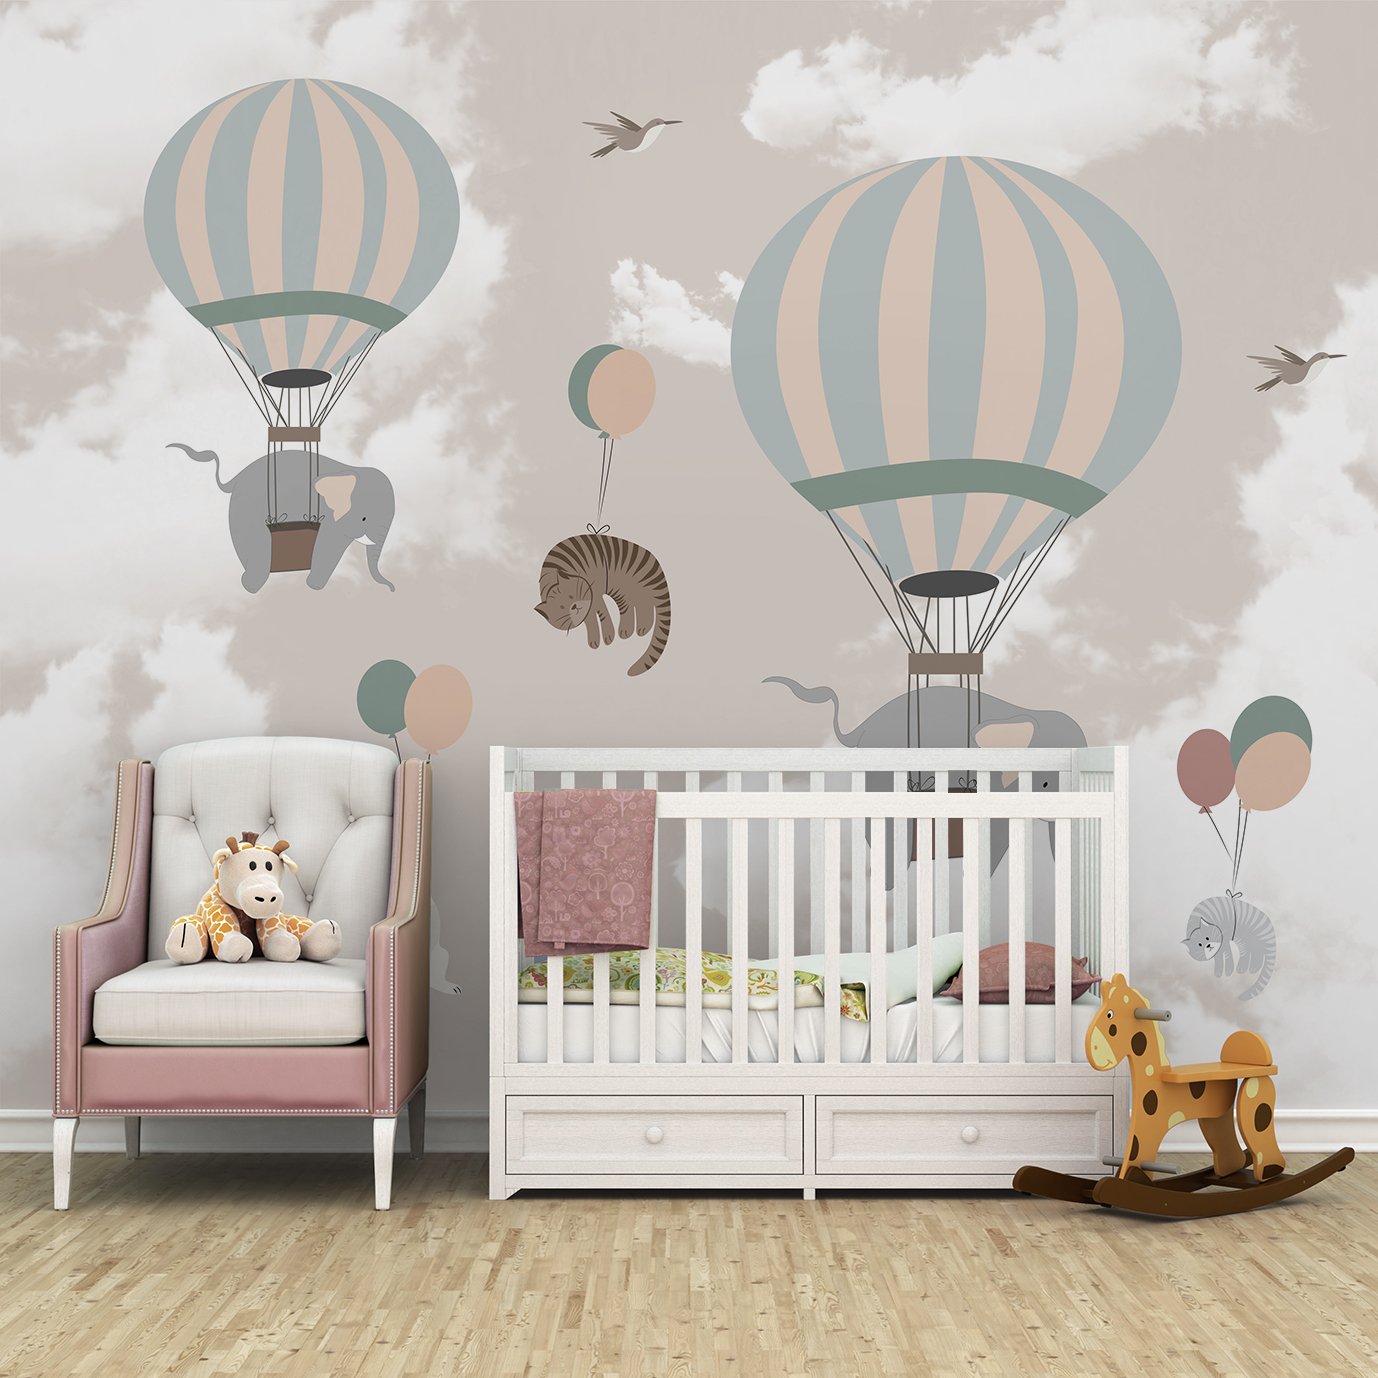 Papel de parede balãozinho menina infantil para quarto de bebê M² PP67 - 3